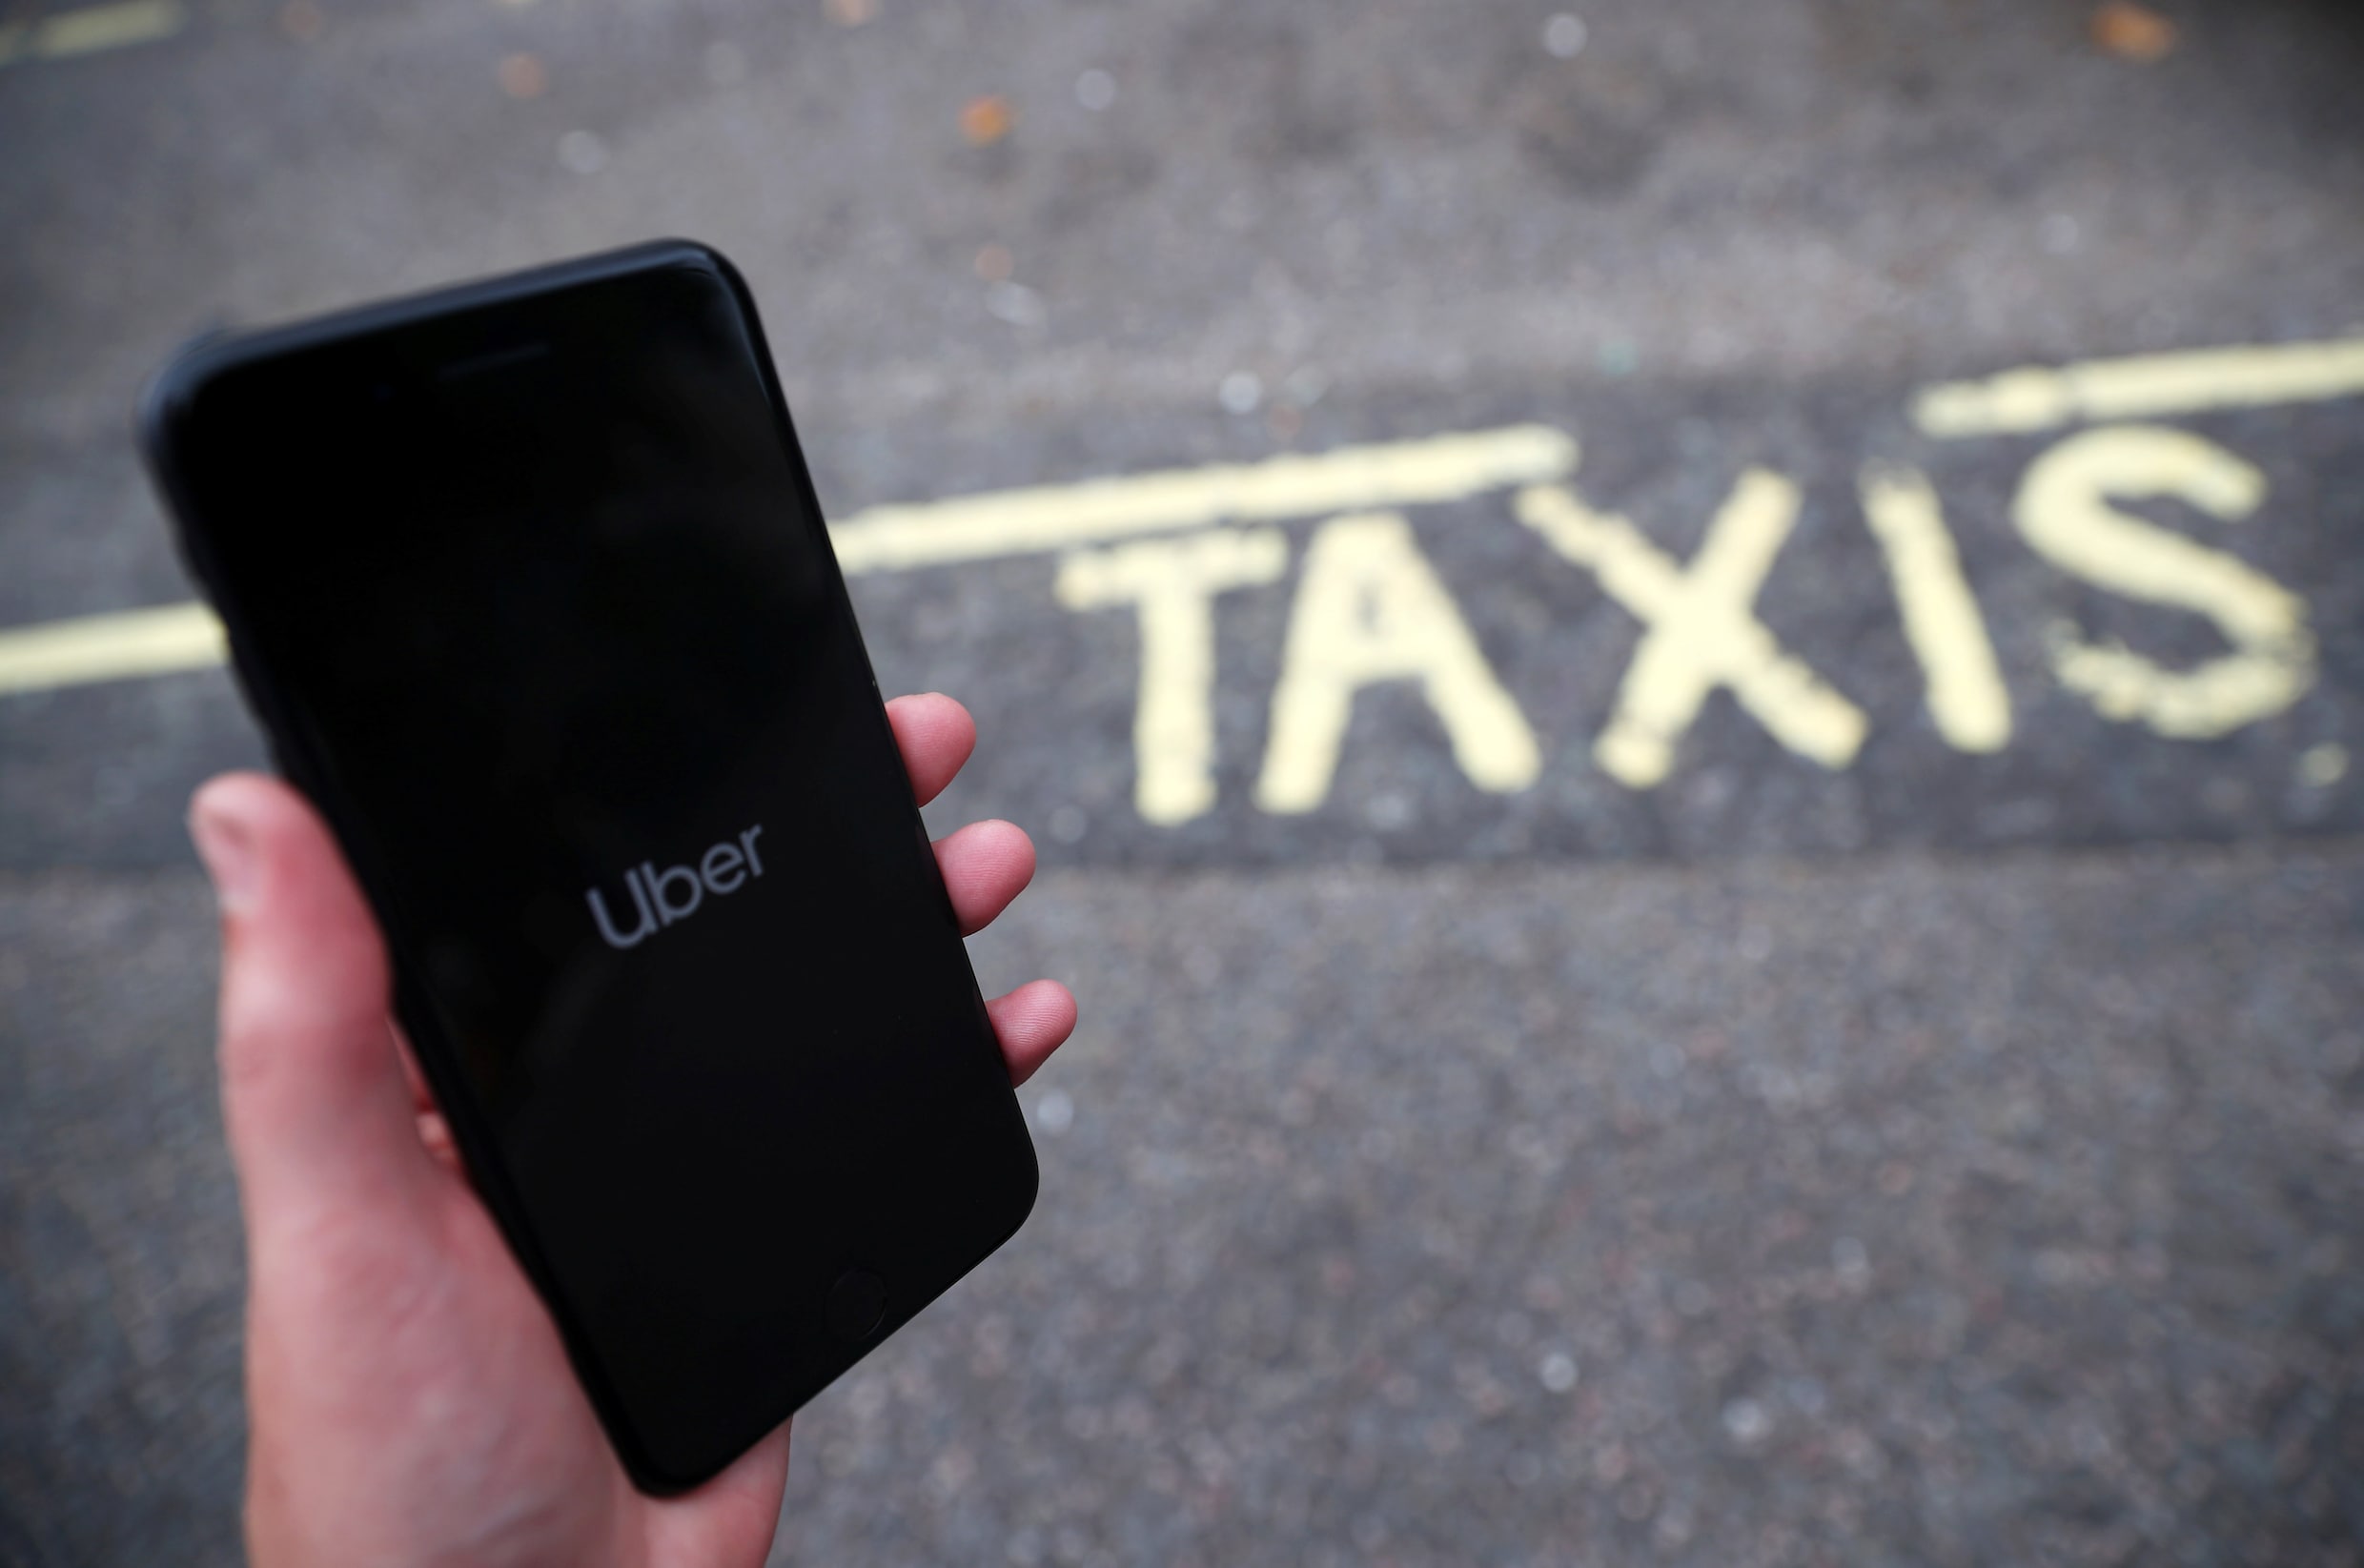 "Uber werkt bingedriving in de hand": het relaas van een undercoverchauffeur